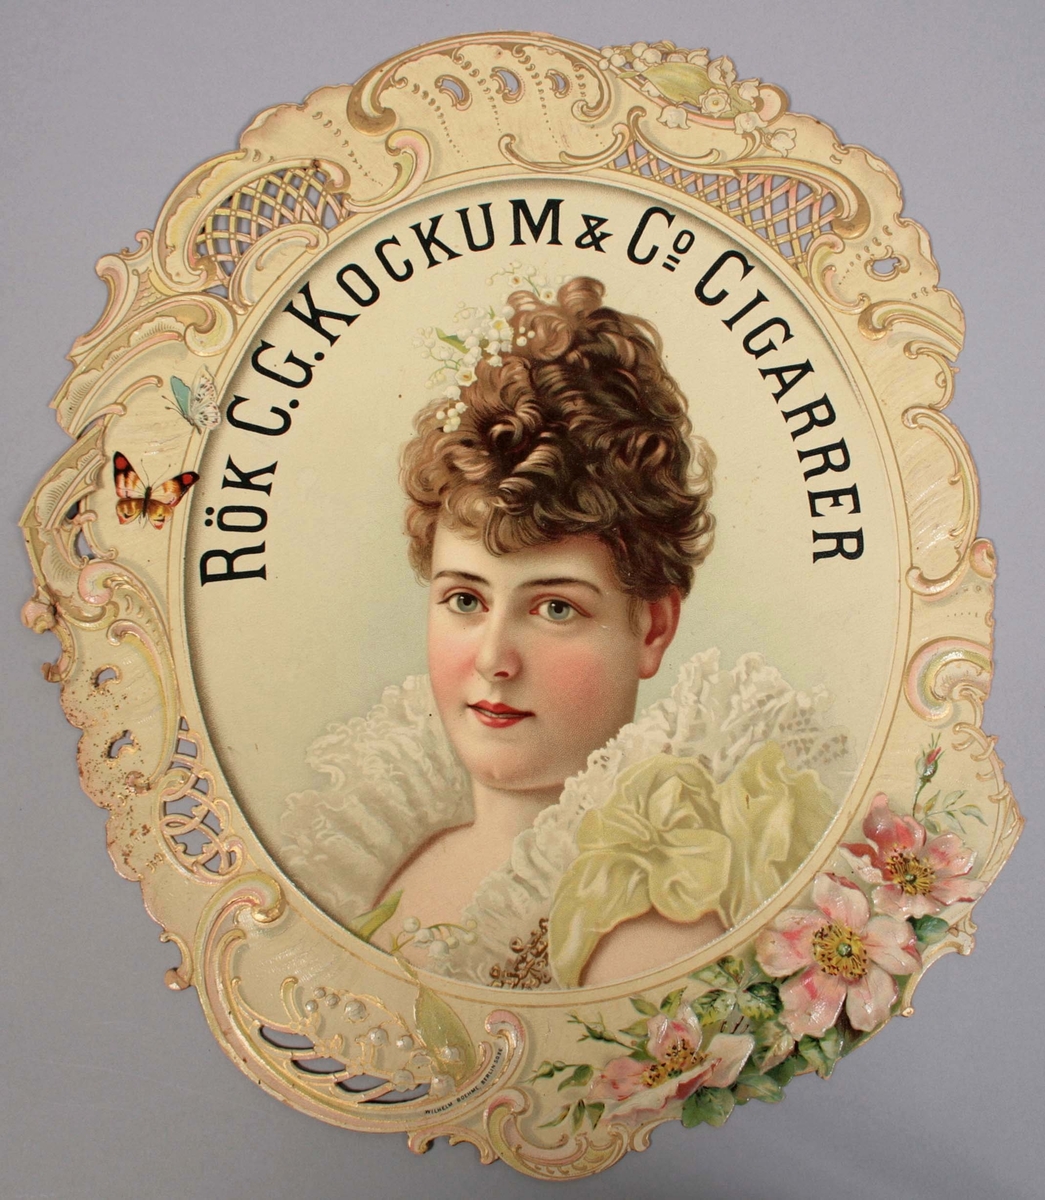 Pressad papperskylt med tryckt dekor. I form av "ansiktsbild av kvinna med uppsatt brunt hår och vita klockformade blommor. Klädd i armlös vit spetsklänning, med höga rynkor och pastellgröna rosetter på vänster axel". Ovanför hennes huvud texten: RÖK C.G. KOCKUMS & Co CIGARRER. 
Allt inramat av en oval ram i nyrokoko, med inslag av blommor och fjärilar i pastellfärger. Märkt: Wilhelm Boehme, Berlin